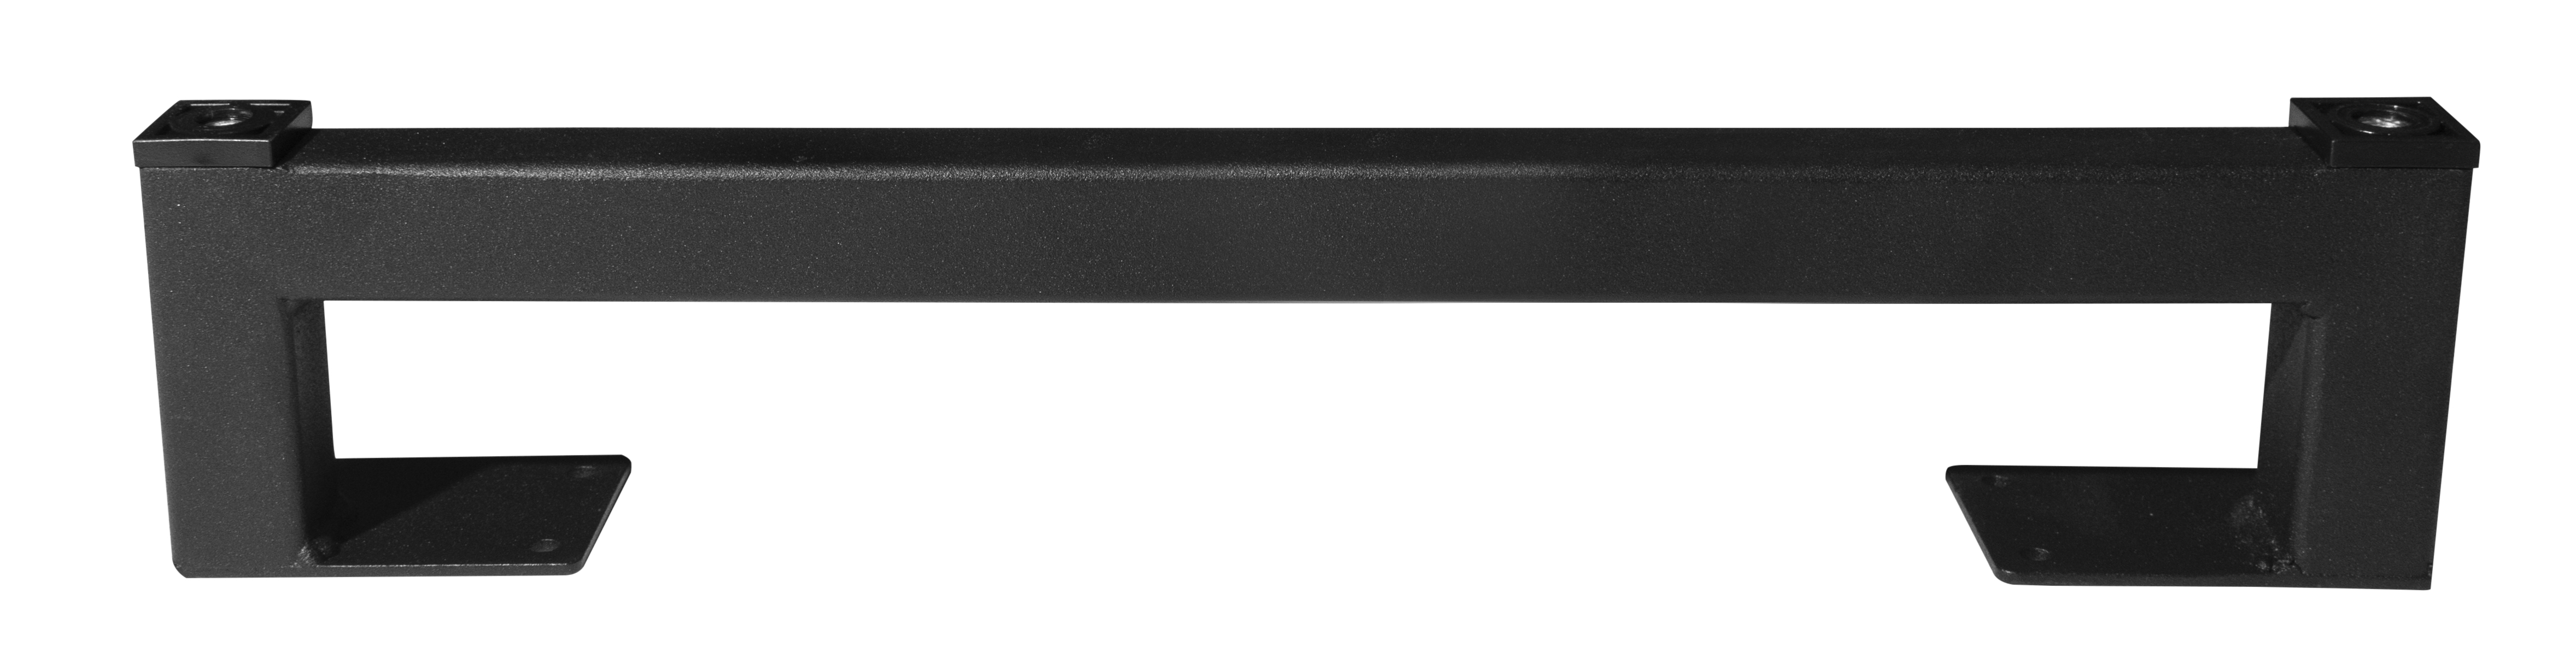 Ножка для мебели LOFT 395х80,цвет черный - фото 1